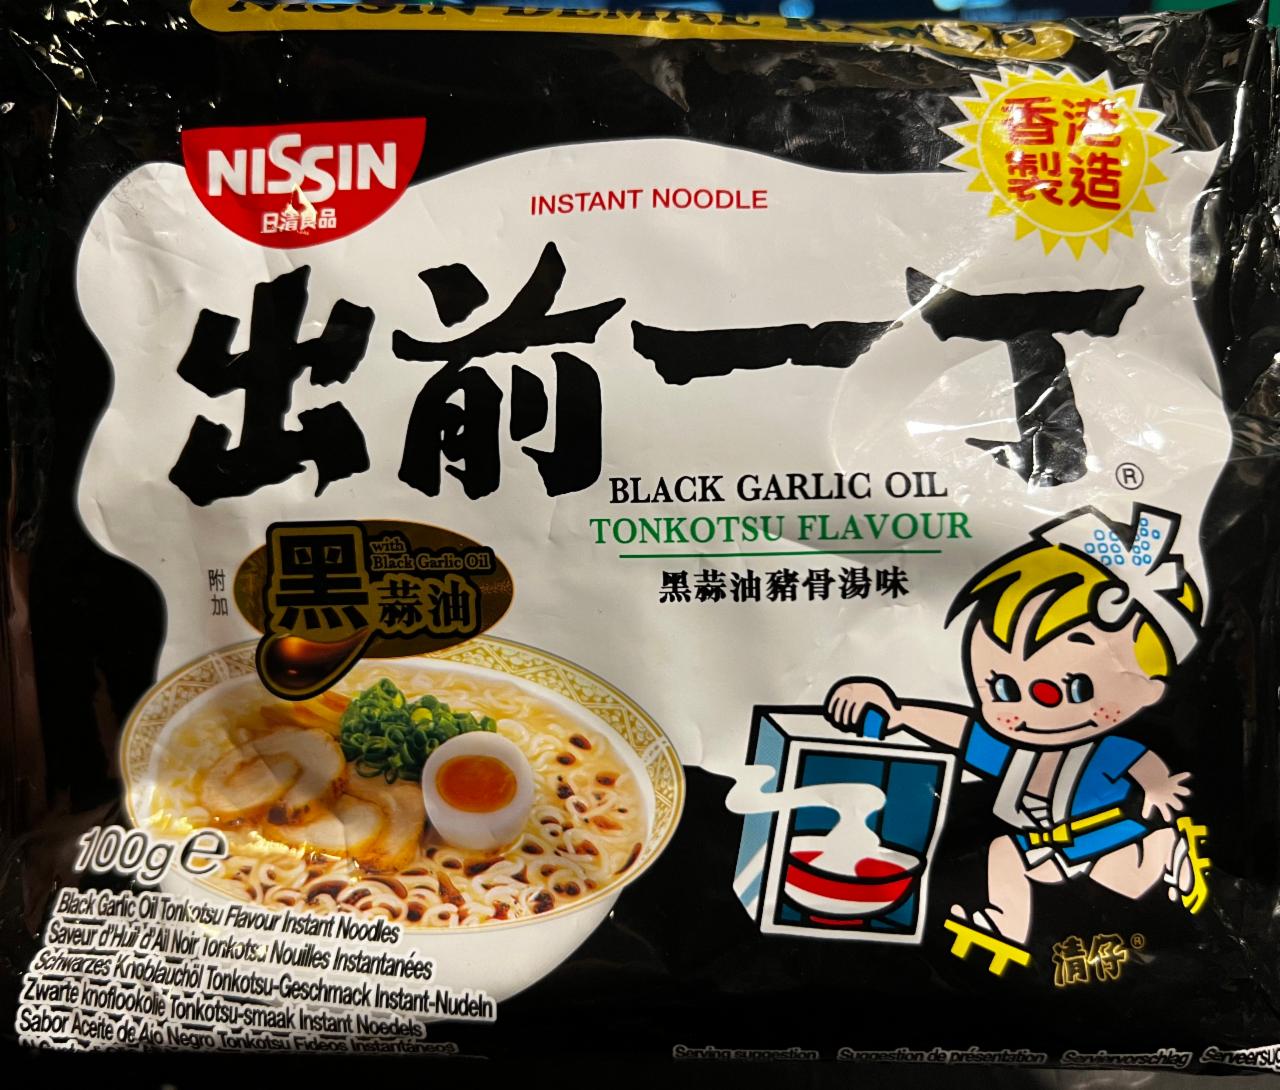 Fotografie - Black Garlic oil Instant noodle Nissin